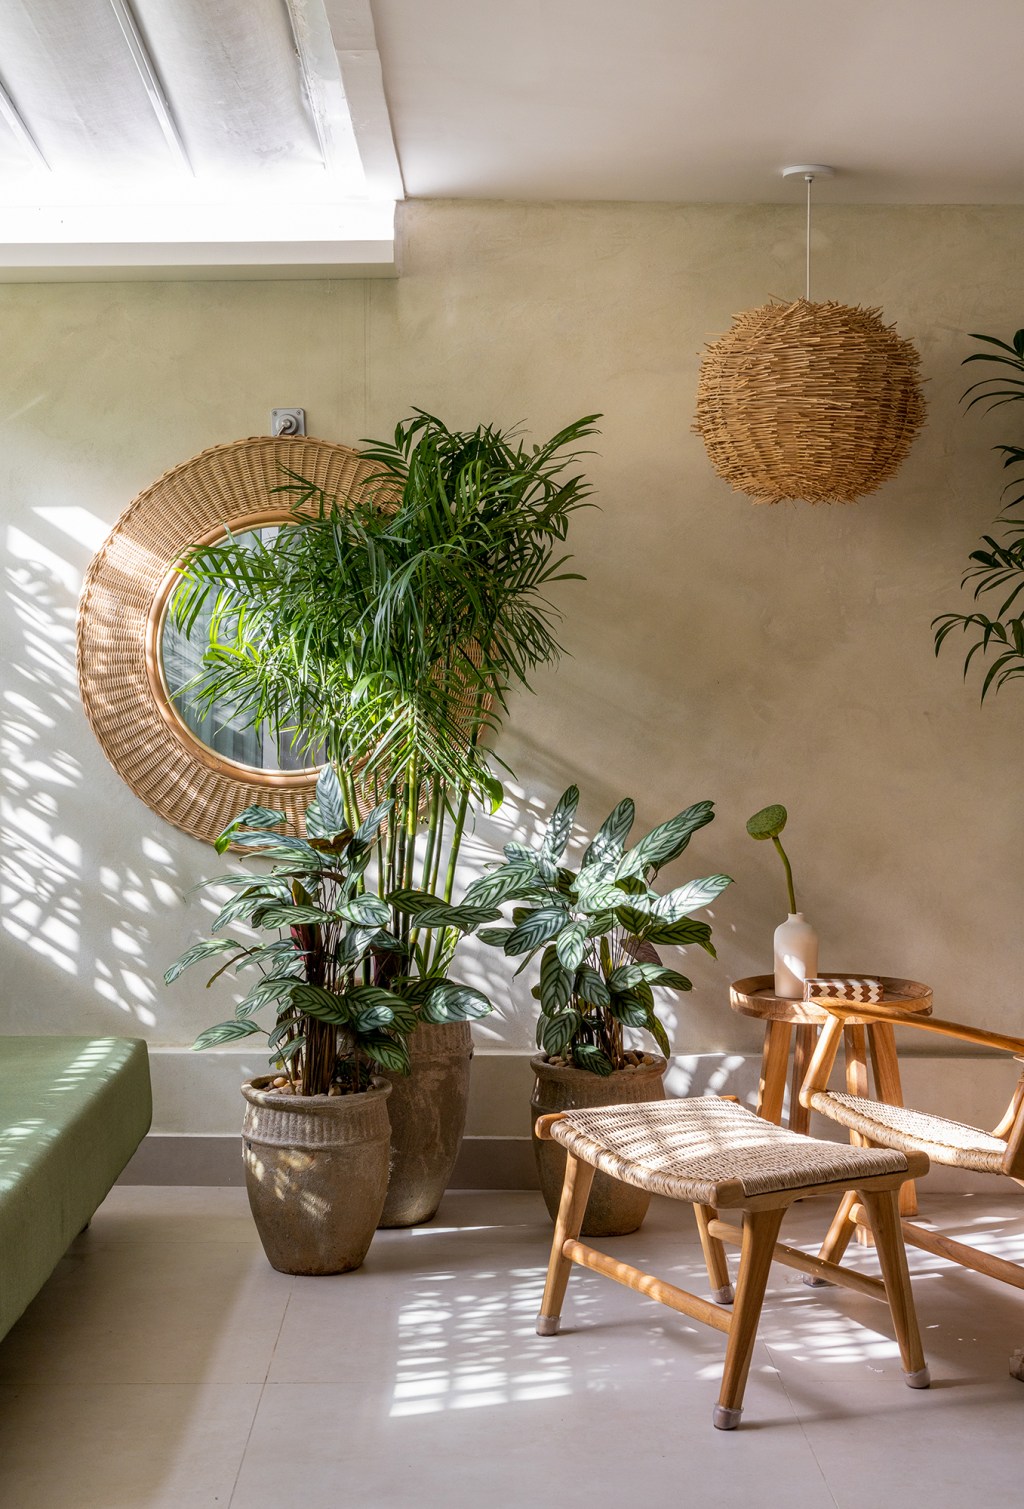 Cobertura carioca une charme, cores, plantas e espaços de convivência. Projeto de Hanna Lerner Arquitetura. Na foto, varanda com plantas, espelho e cadeira.